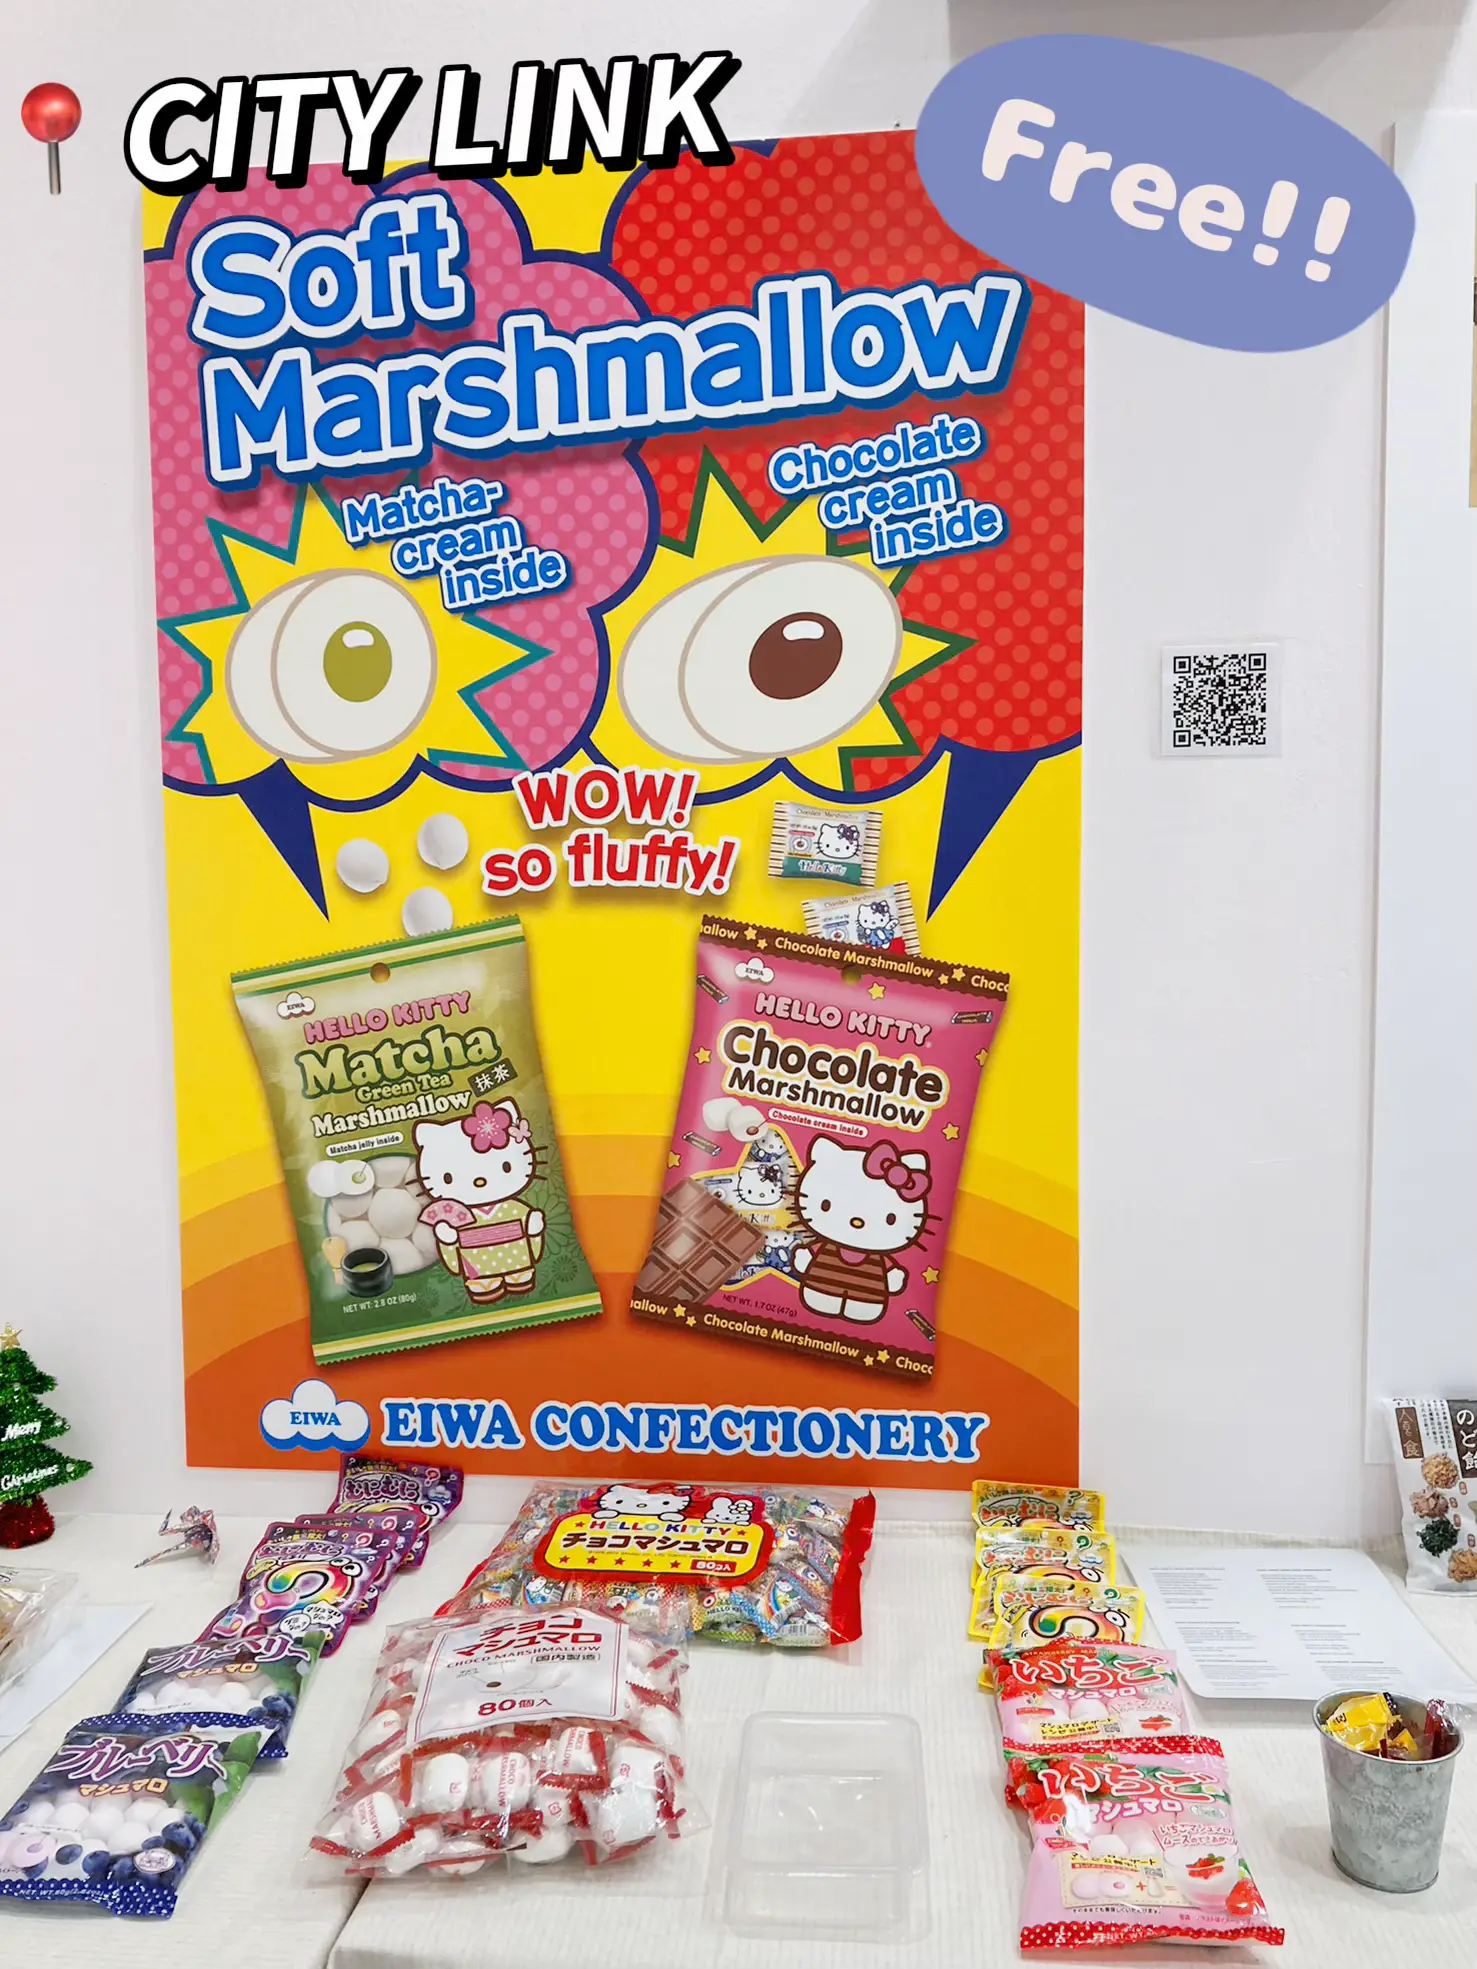  Hello Kitty Cho co Marshmallow 30 pcs Box Eiwa